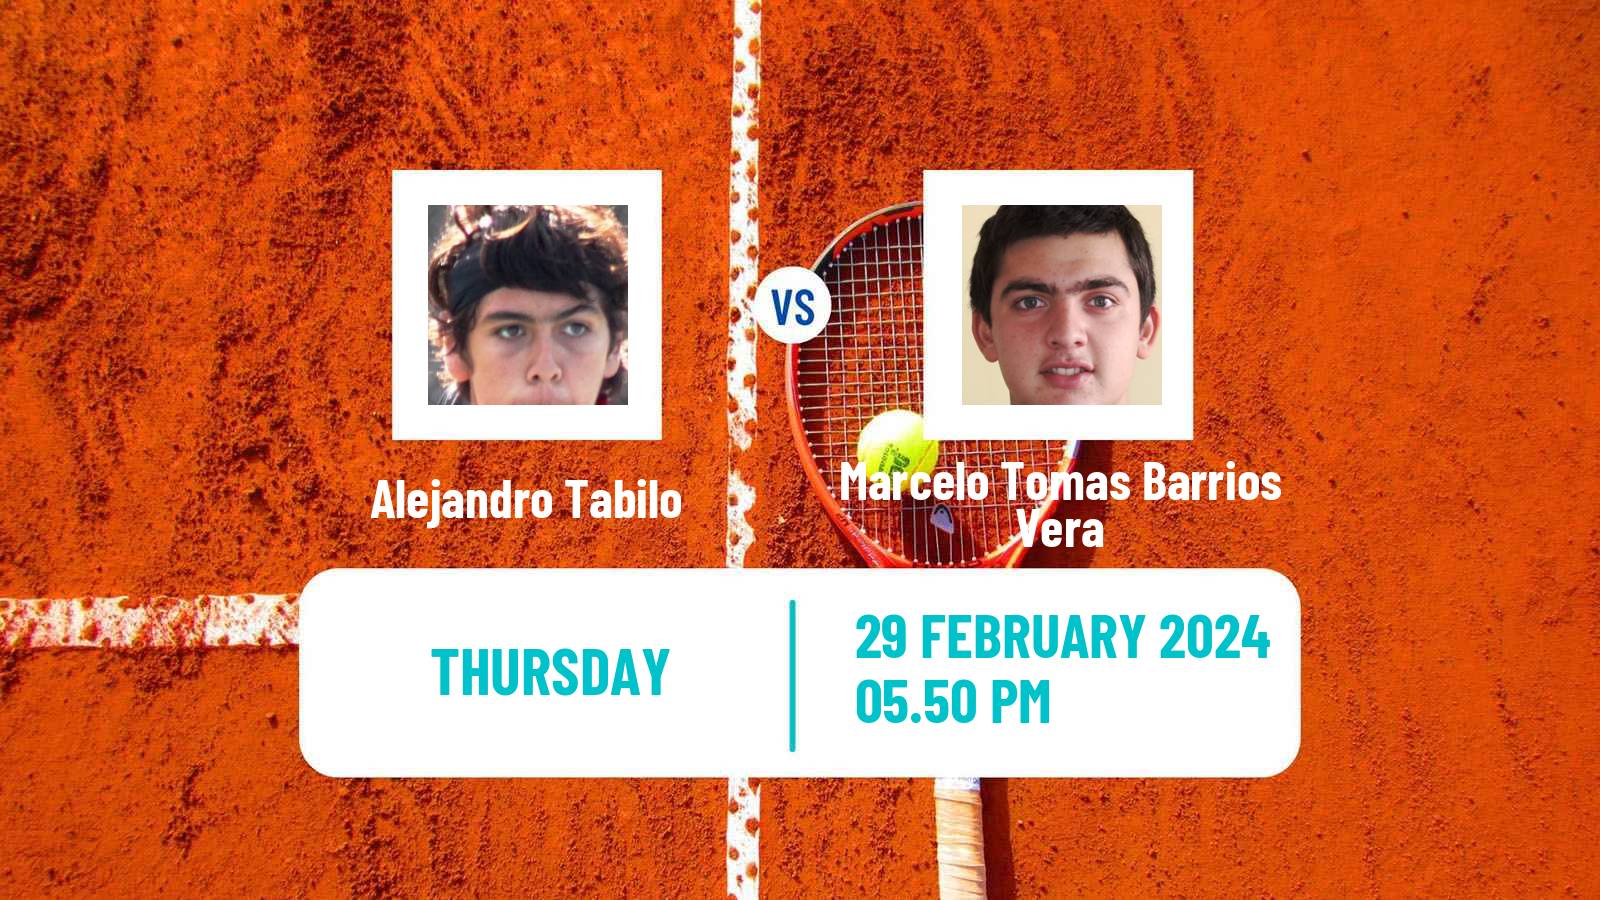 Tennis ATP Santiago Alejandro Tabilo - Marcelo Tomas Barrios Vera